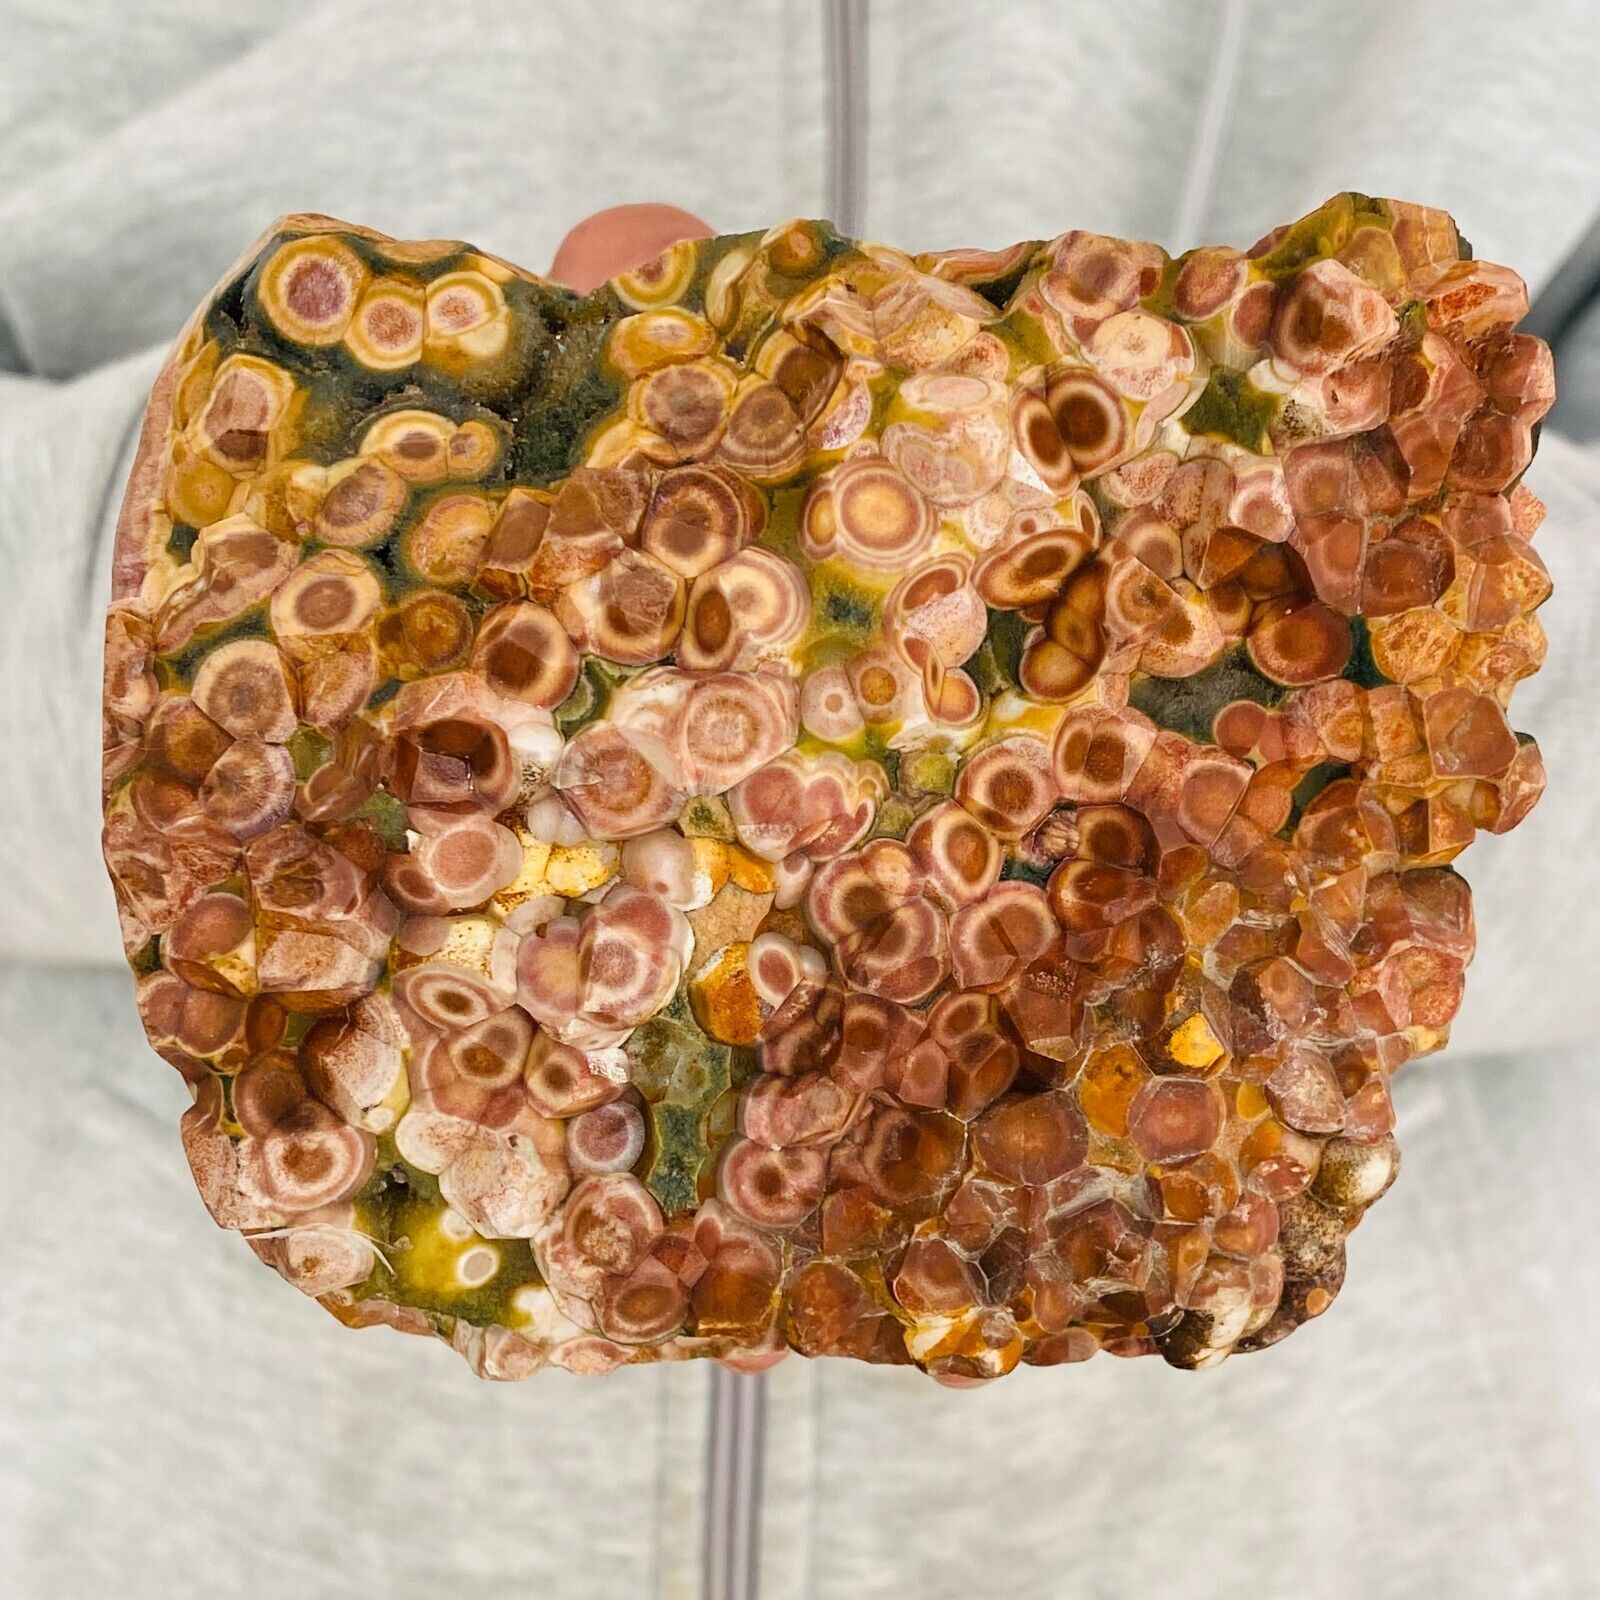 1360g Large Polychrome Ocean Landscape Jasper Stone Mineral Display Specimen